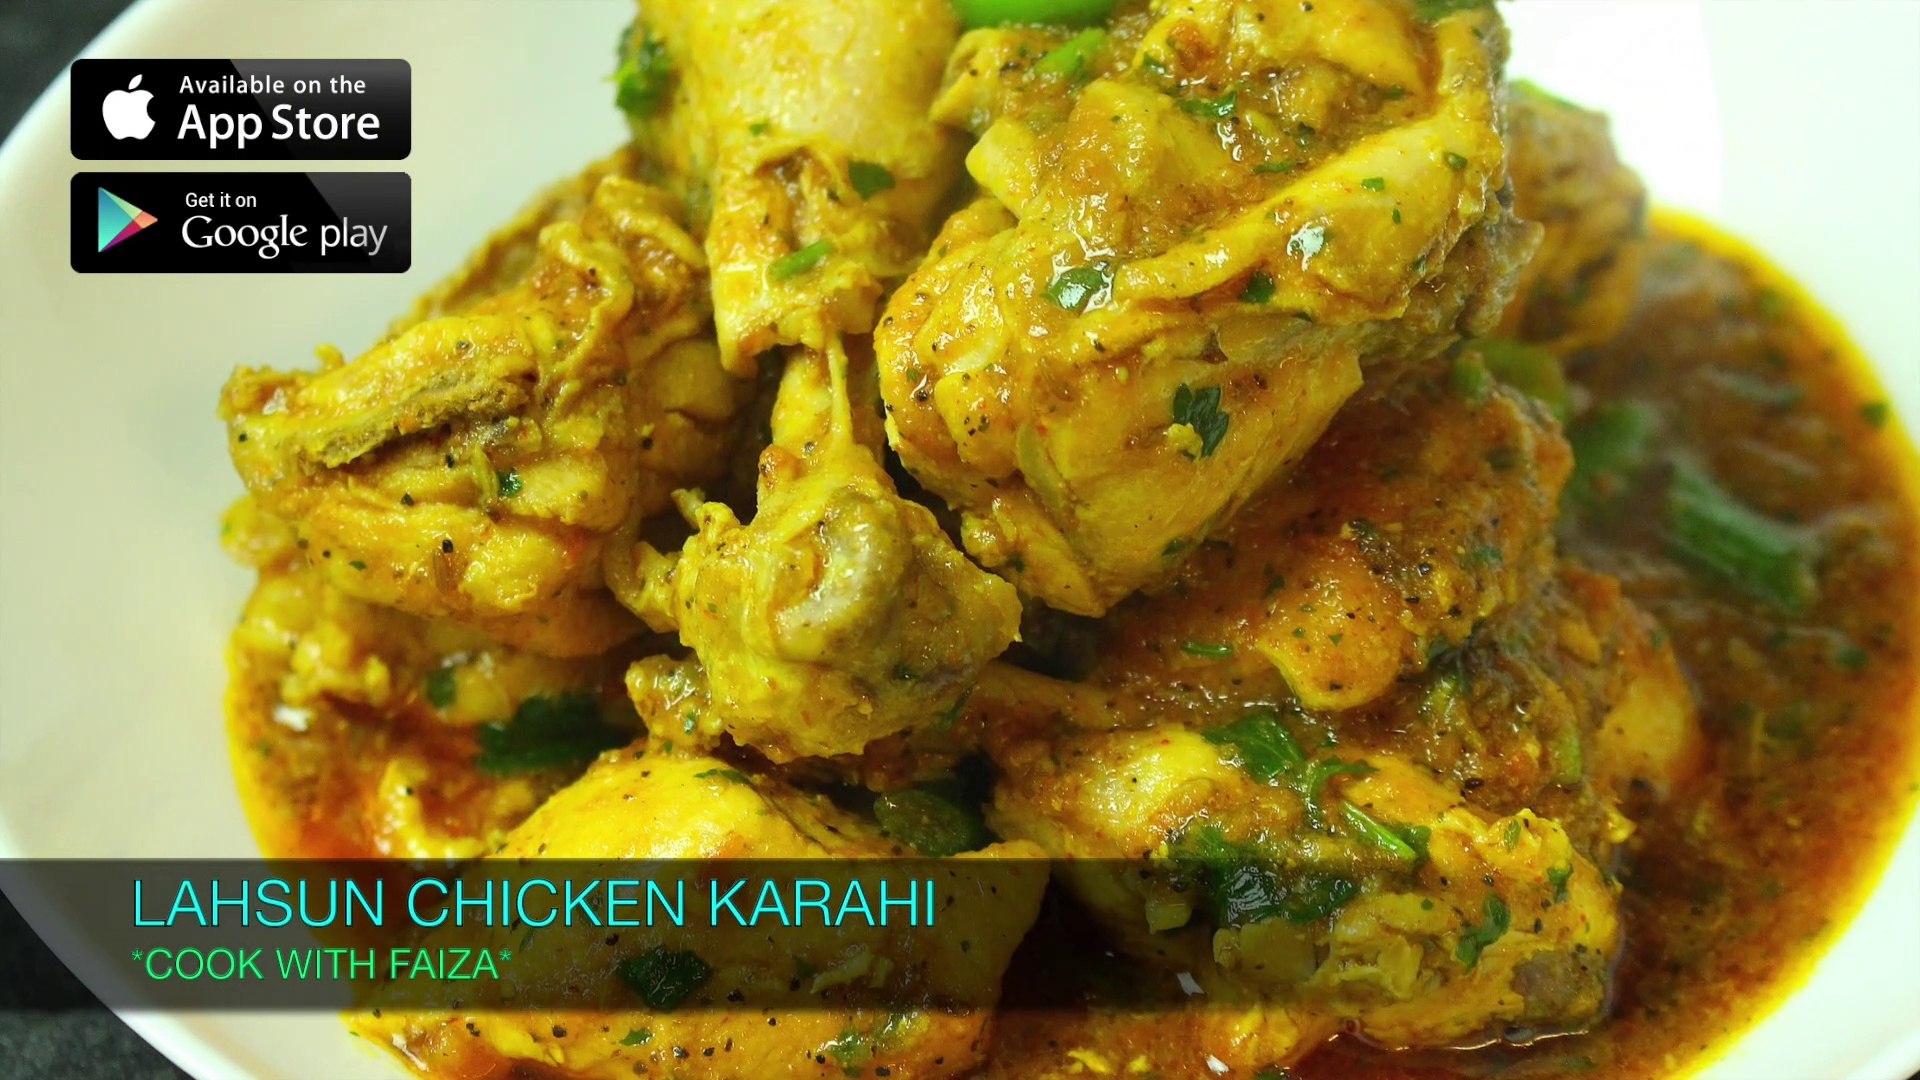 Lahsun Chicken Karahi Cook With Faiza